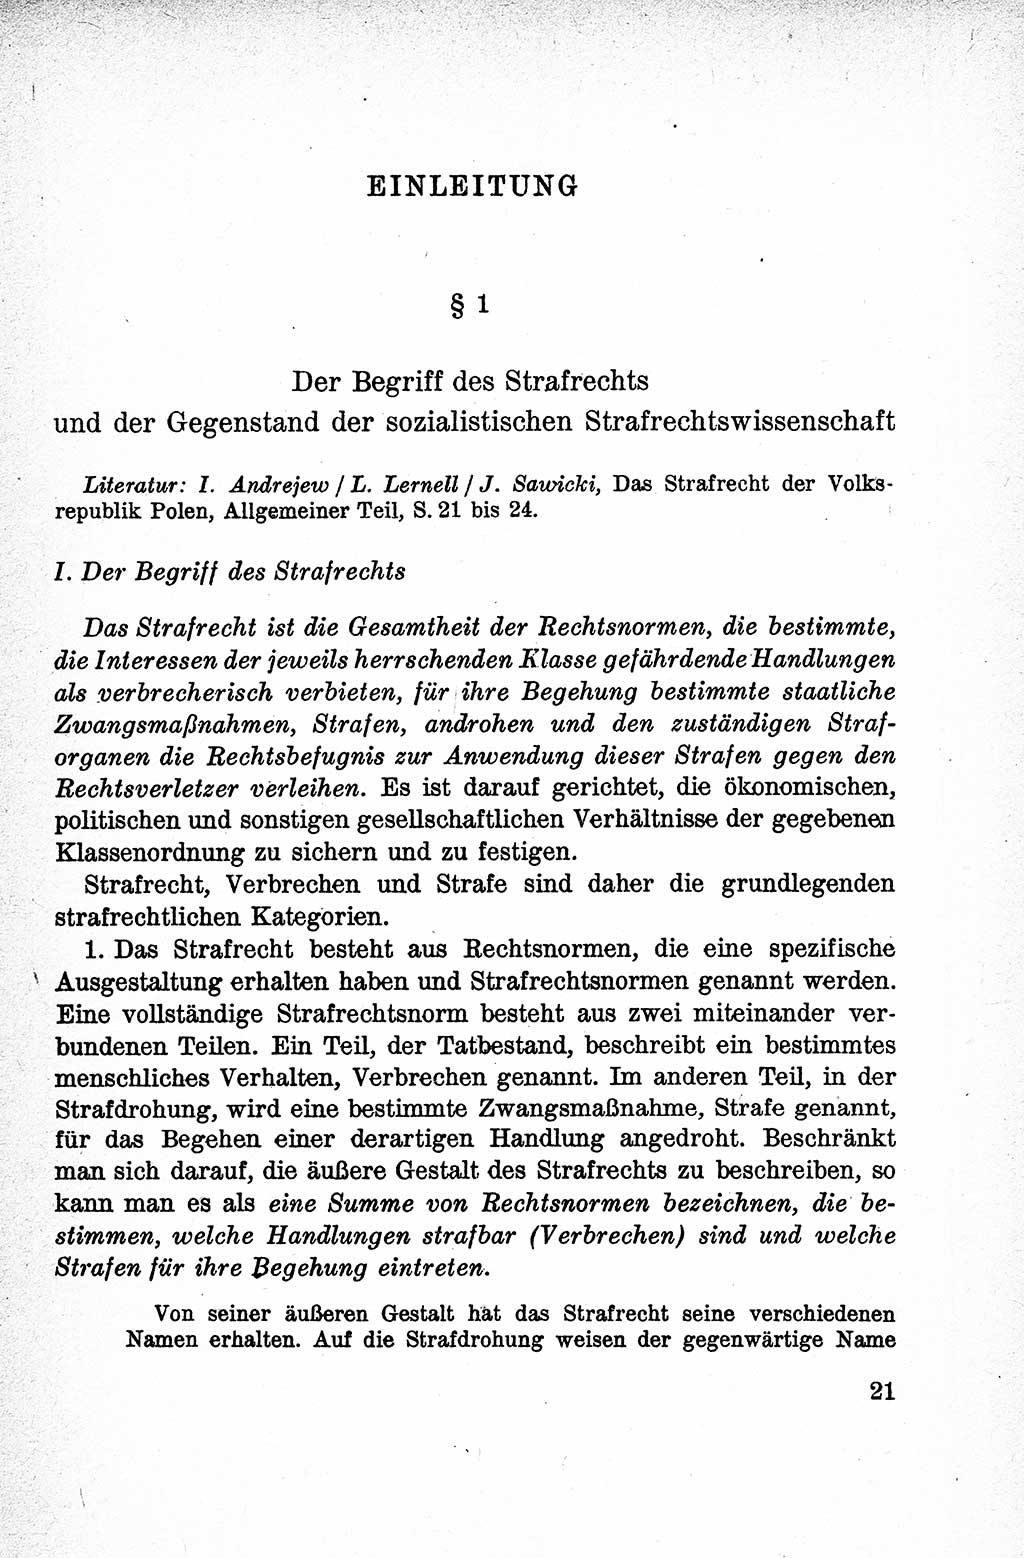 Lehrbuch des Strafrechts der Deutschen Demokratischen Republik (DDR), Allgemeiner Teil 1959, Seite 21 (Lb. Strafr. DDR AT 1959, S. 21)